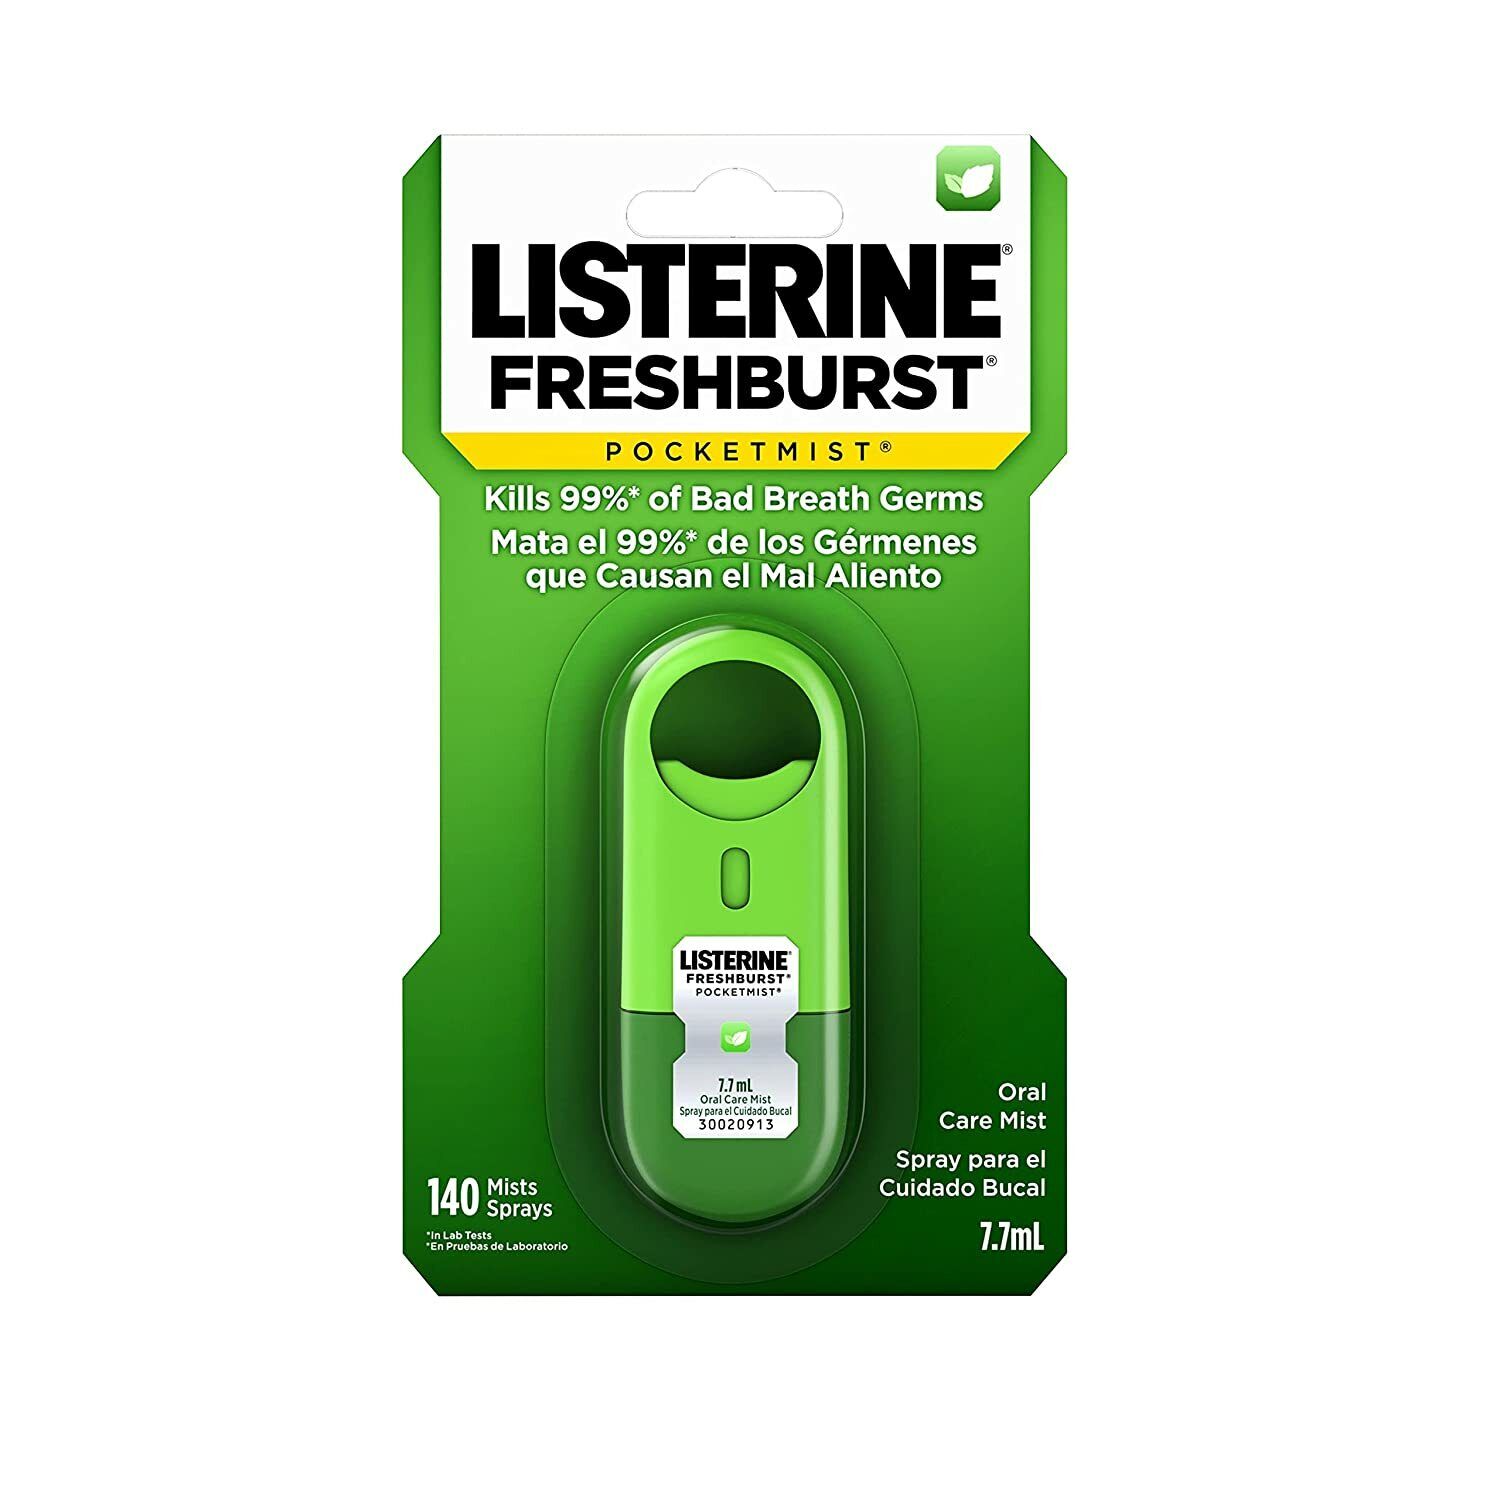 Listerine PocketMist Oral Care Mist, Freshburst 7.7 mL (3 pack)